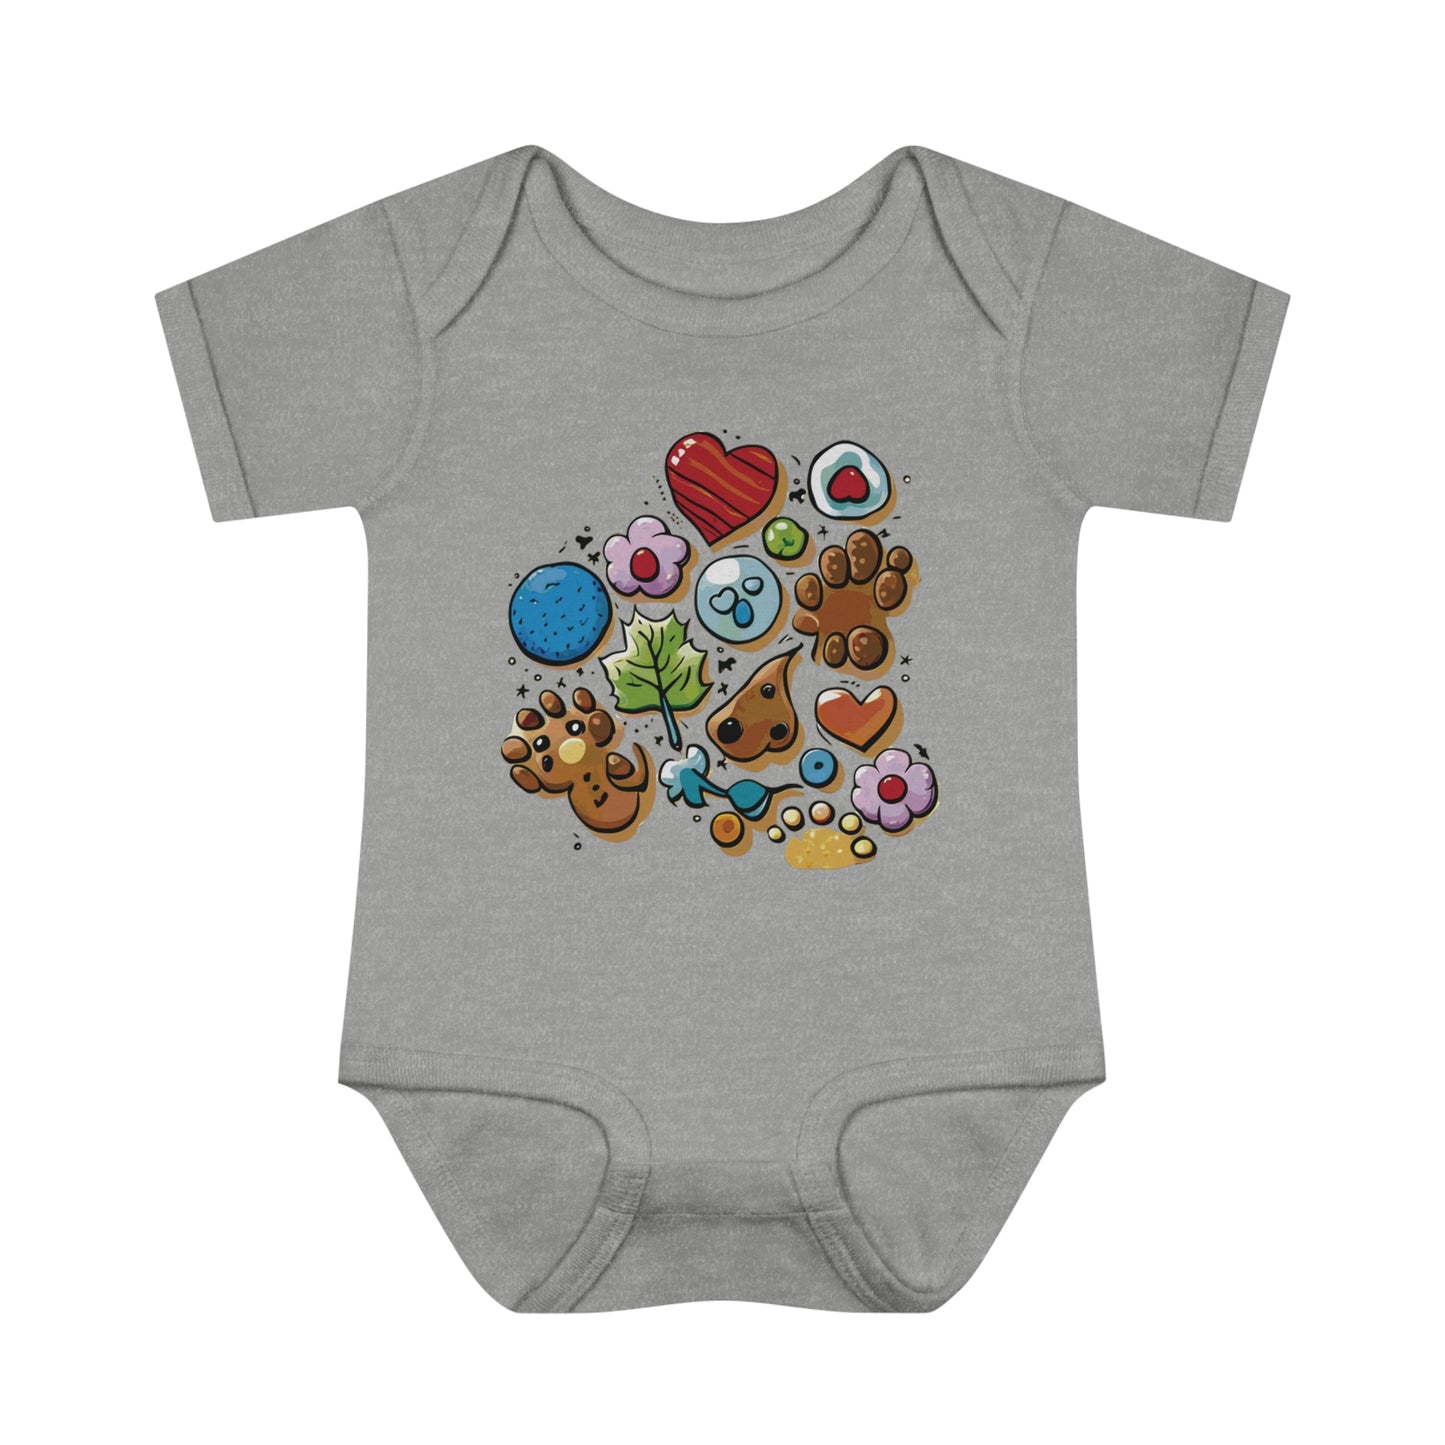 BB-19.1 Infant Baby Rib Bodysuit